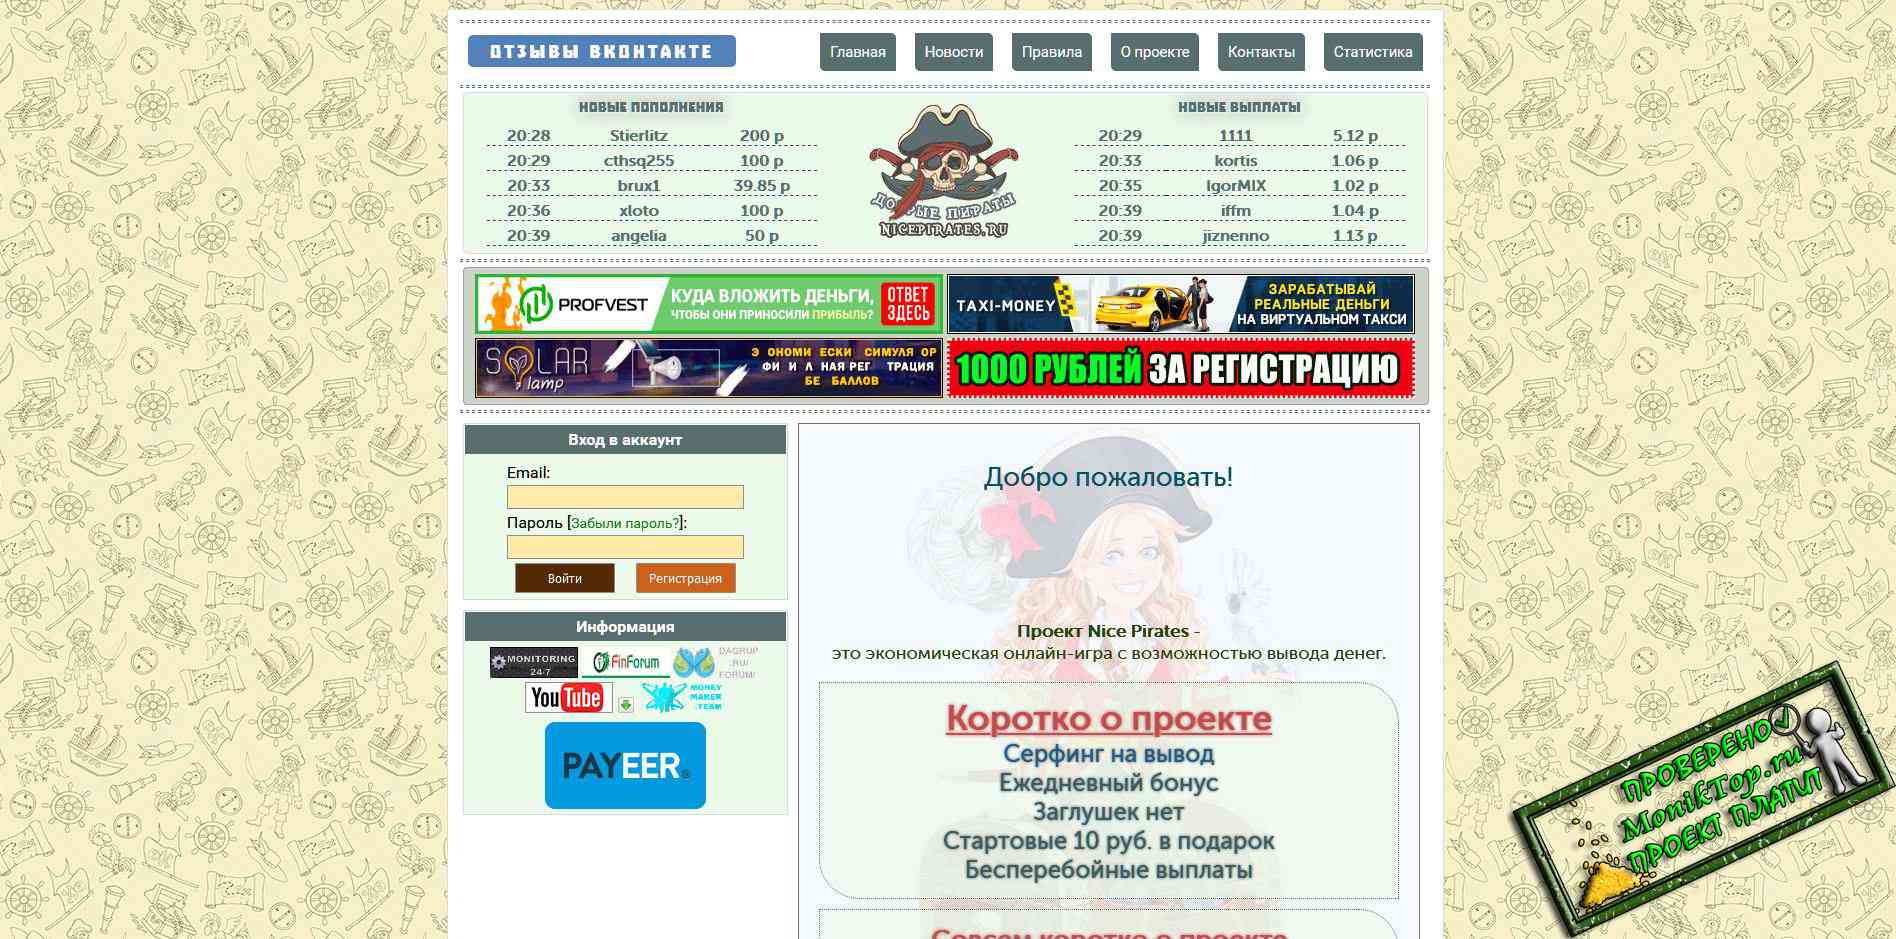 Заработок в телеграмме без вложений с выводом денег на карту на русском языке фото 111